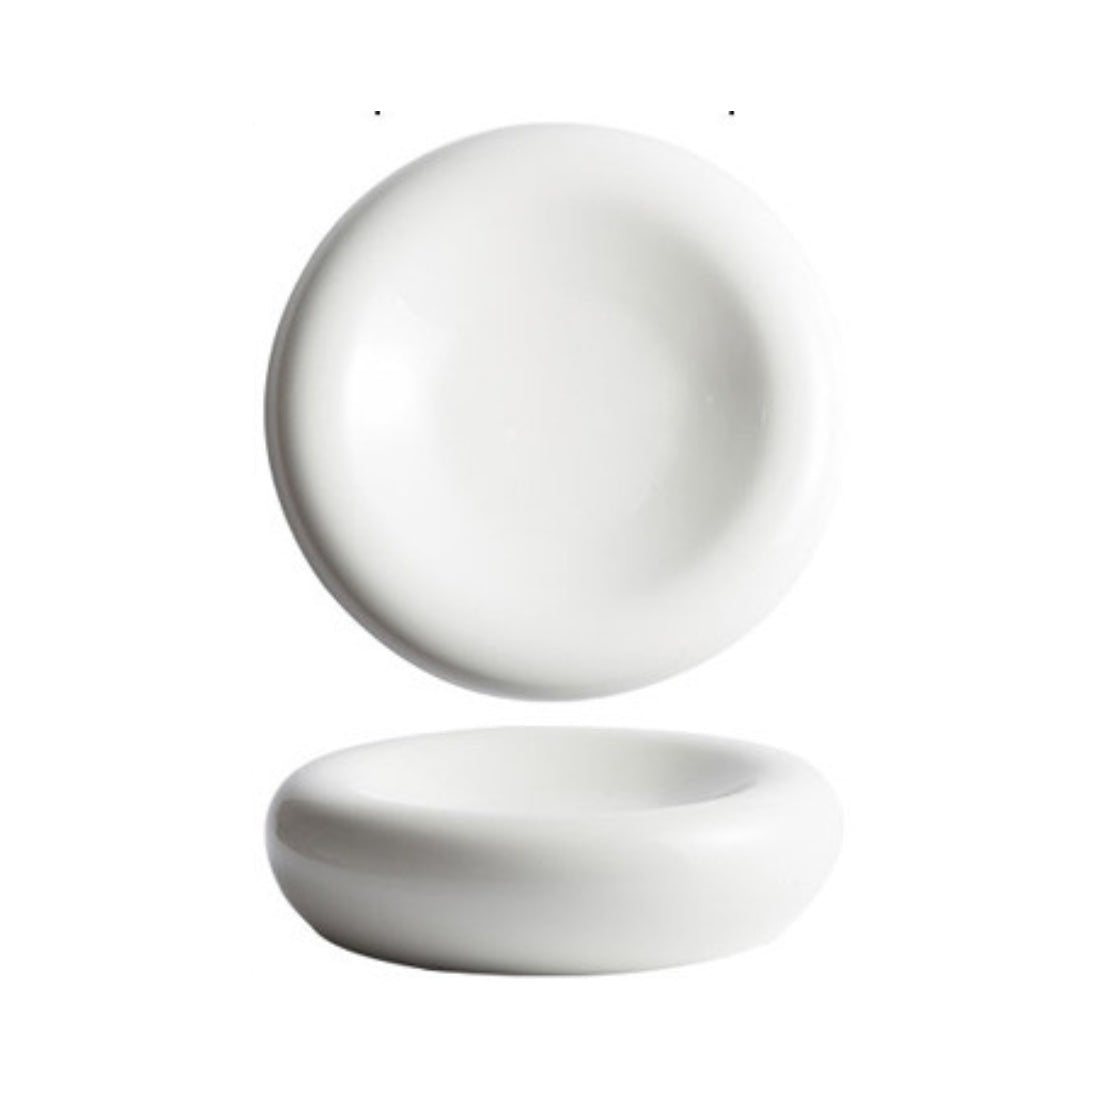 White, chunky ceramic orb plate